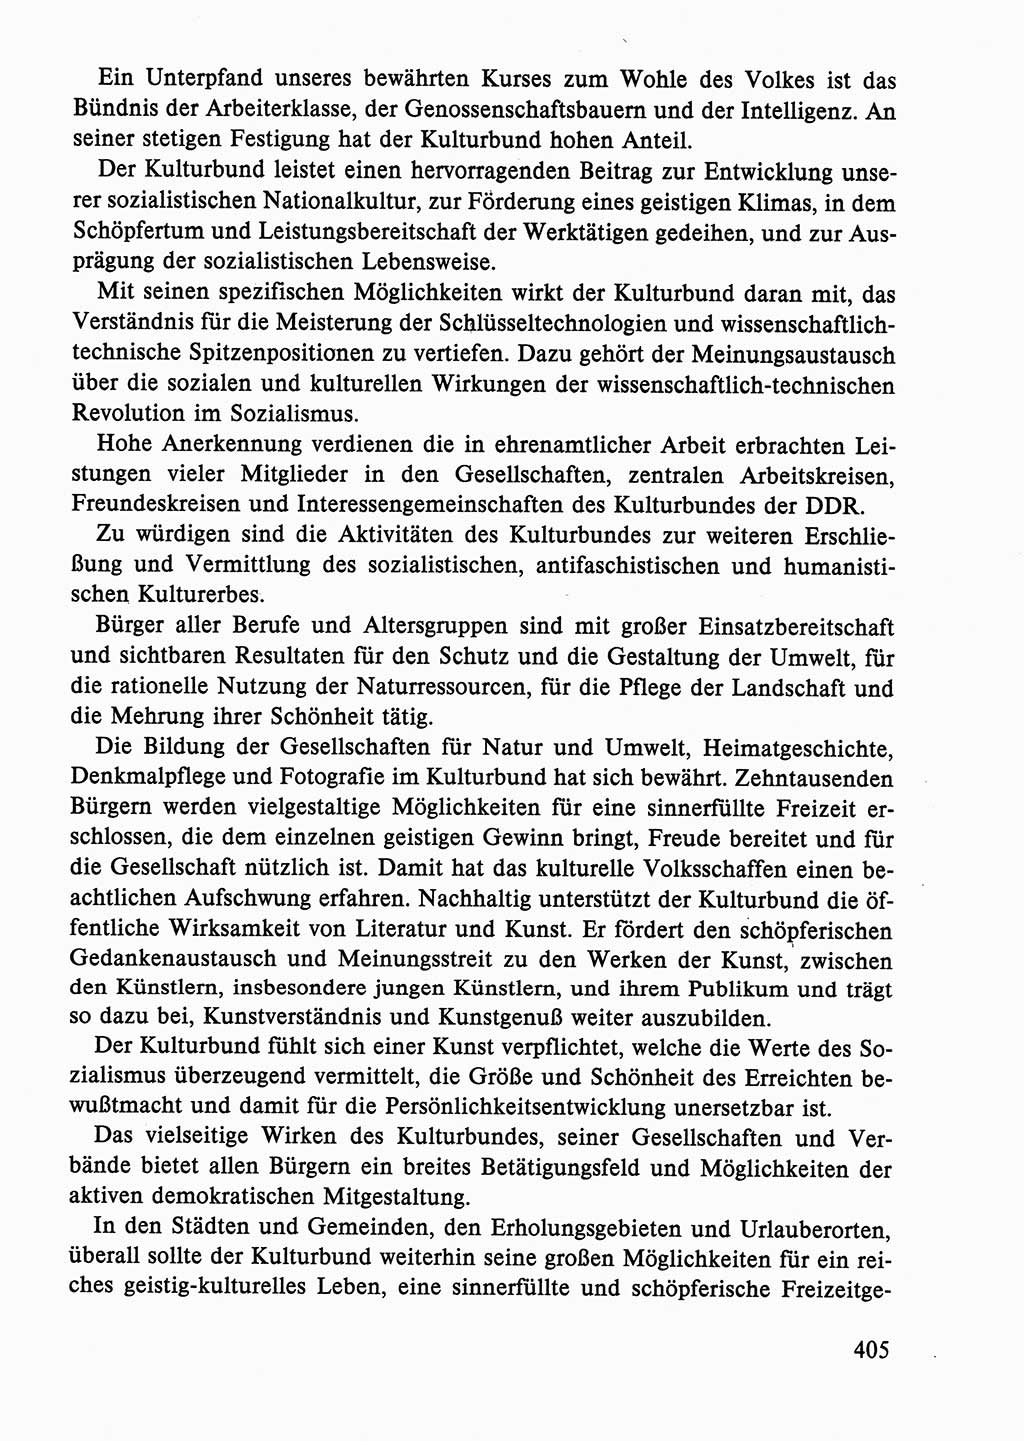 Dokumente der Sozialistischen Einheitspartei Deutschlands (SED) [Deutsche Demokratische Republik (DDR)] 1986-1987, Seite 405 (Dok. SED DDR 1986-1987, S. 405)